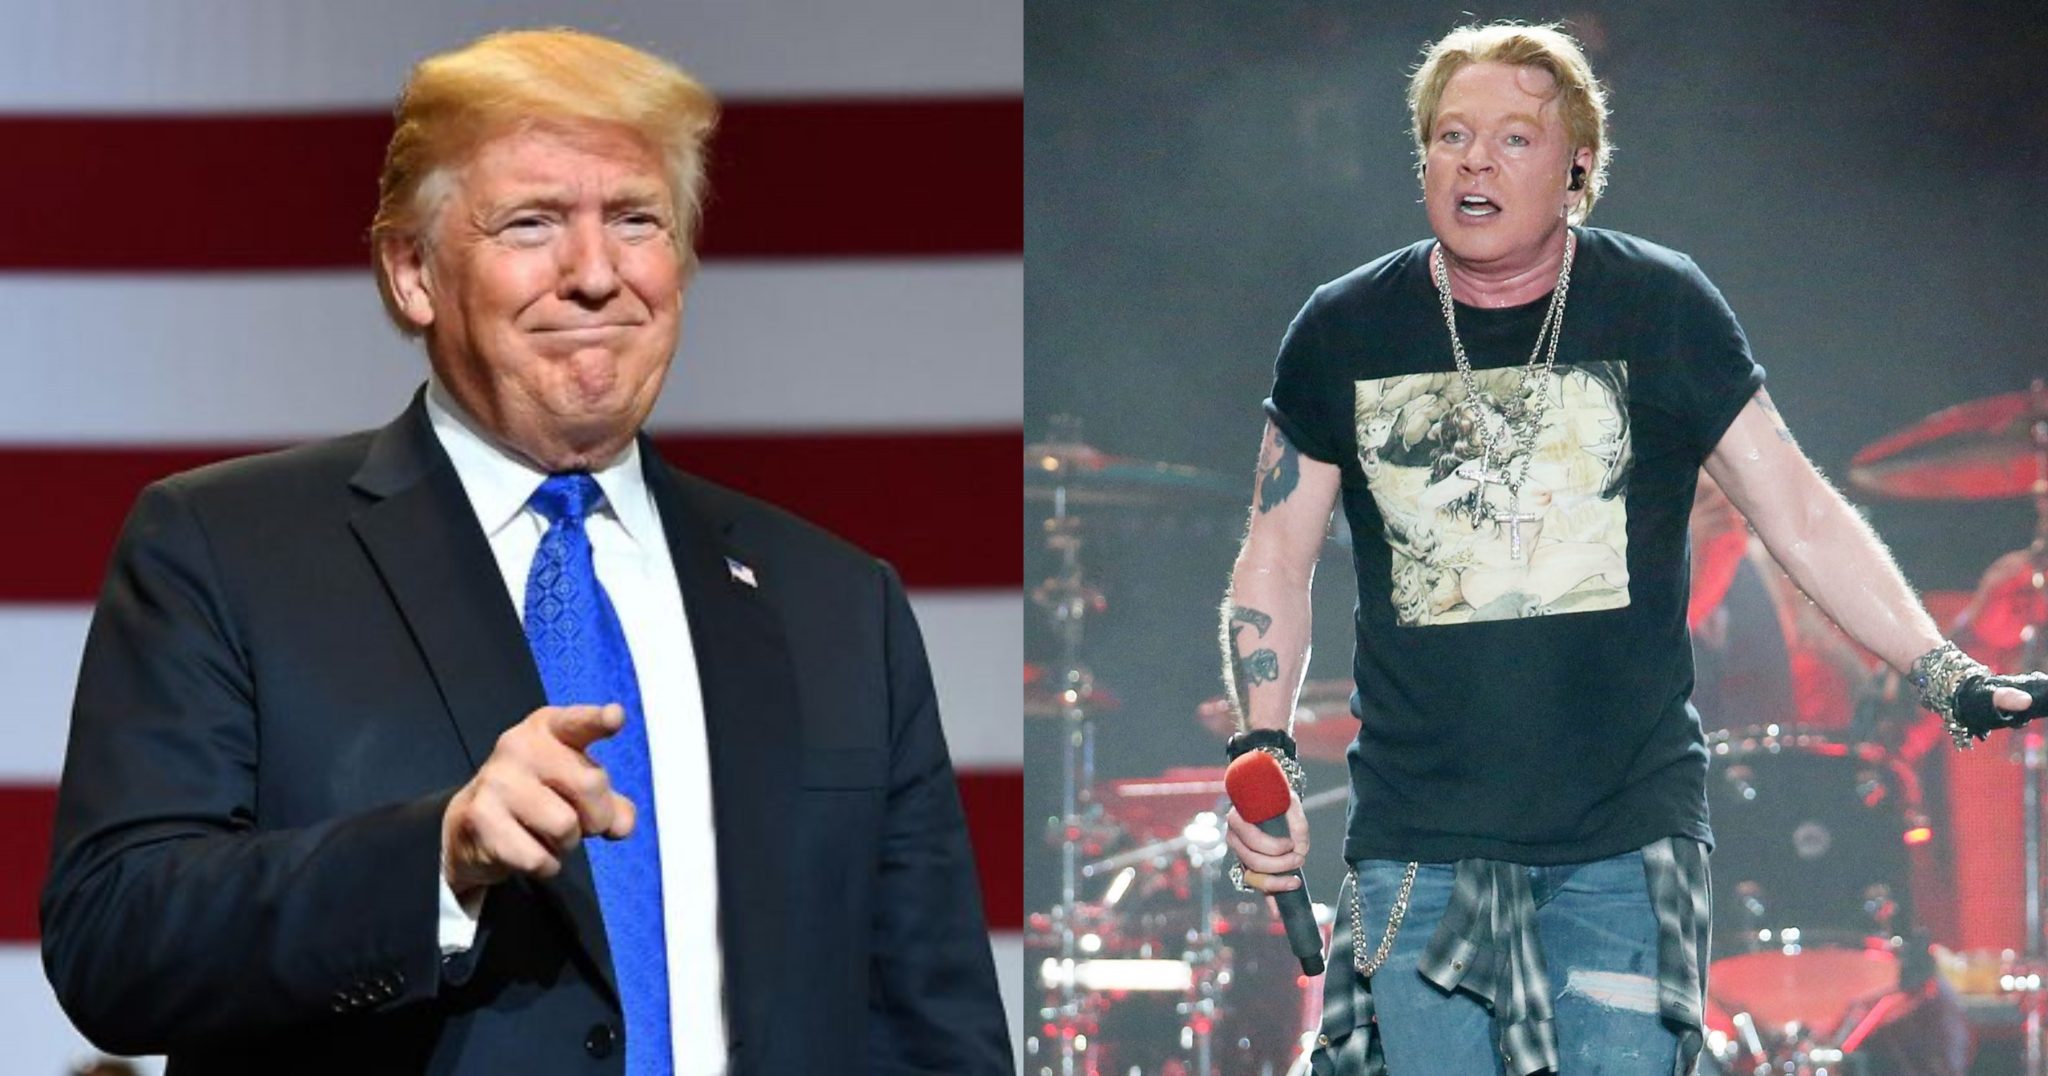 Donald Trump: “November Rain” Của Guns N’ Roses Là MV Hay Nhất Mọi Thời Đại